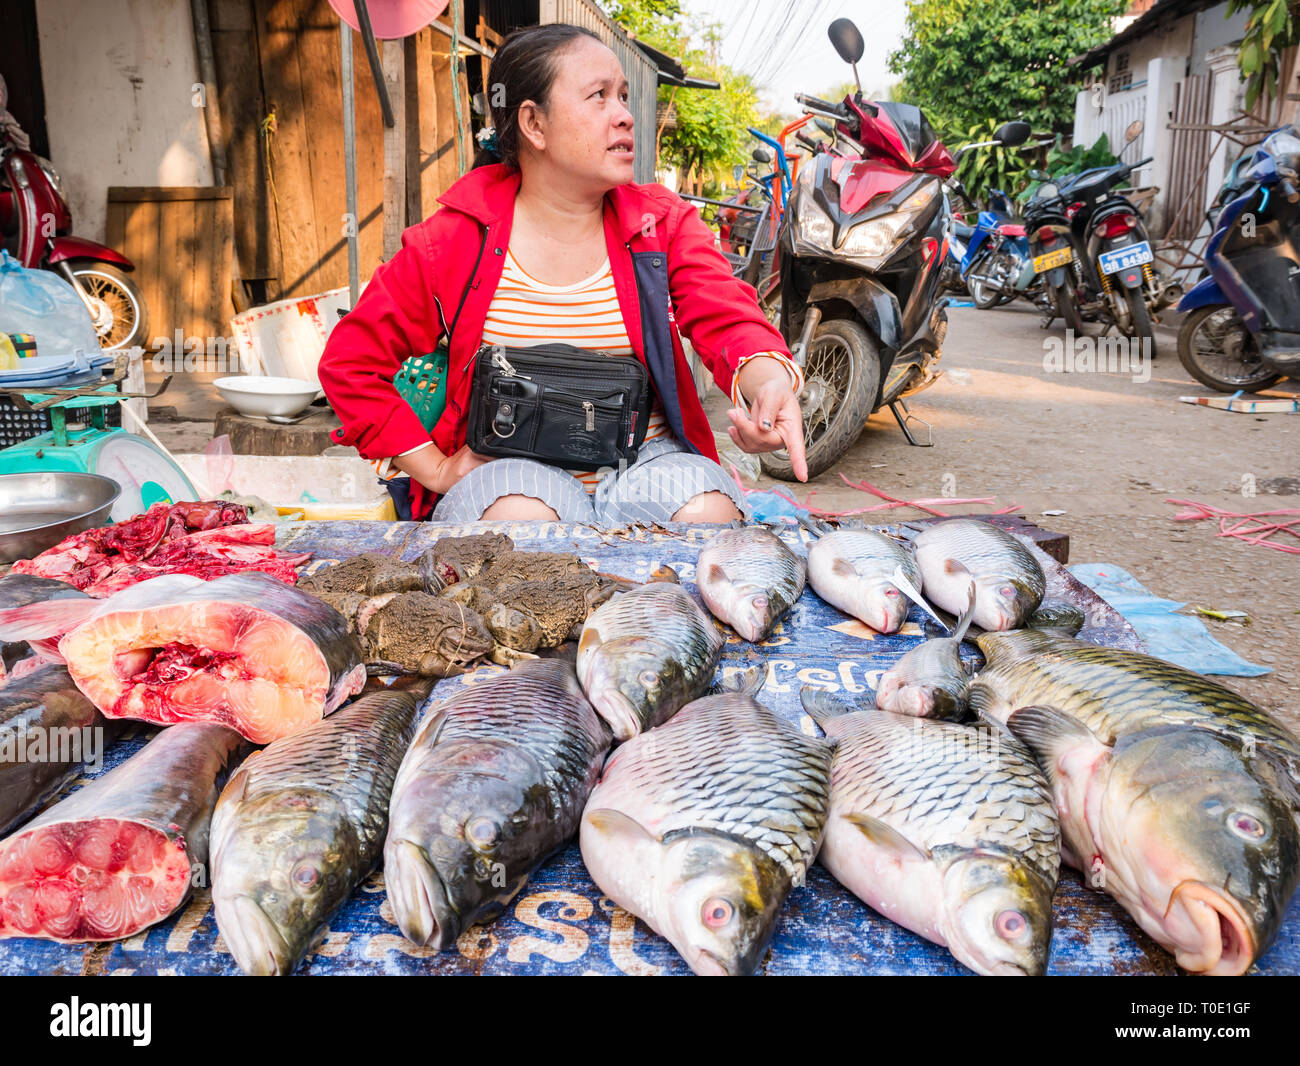 Frau verkaufen Fische und lebende Kröten am Marktstand, morgen Street Food Market, Luang Prabang, Laos, Se Asien Stockfoto